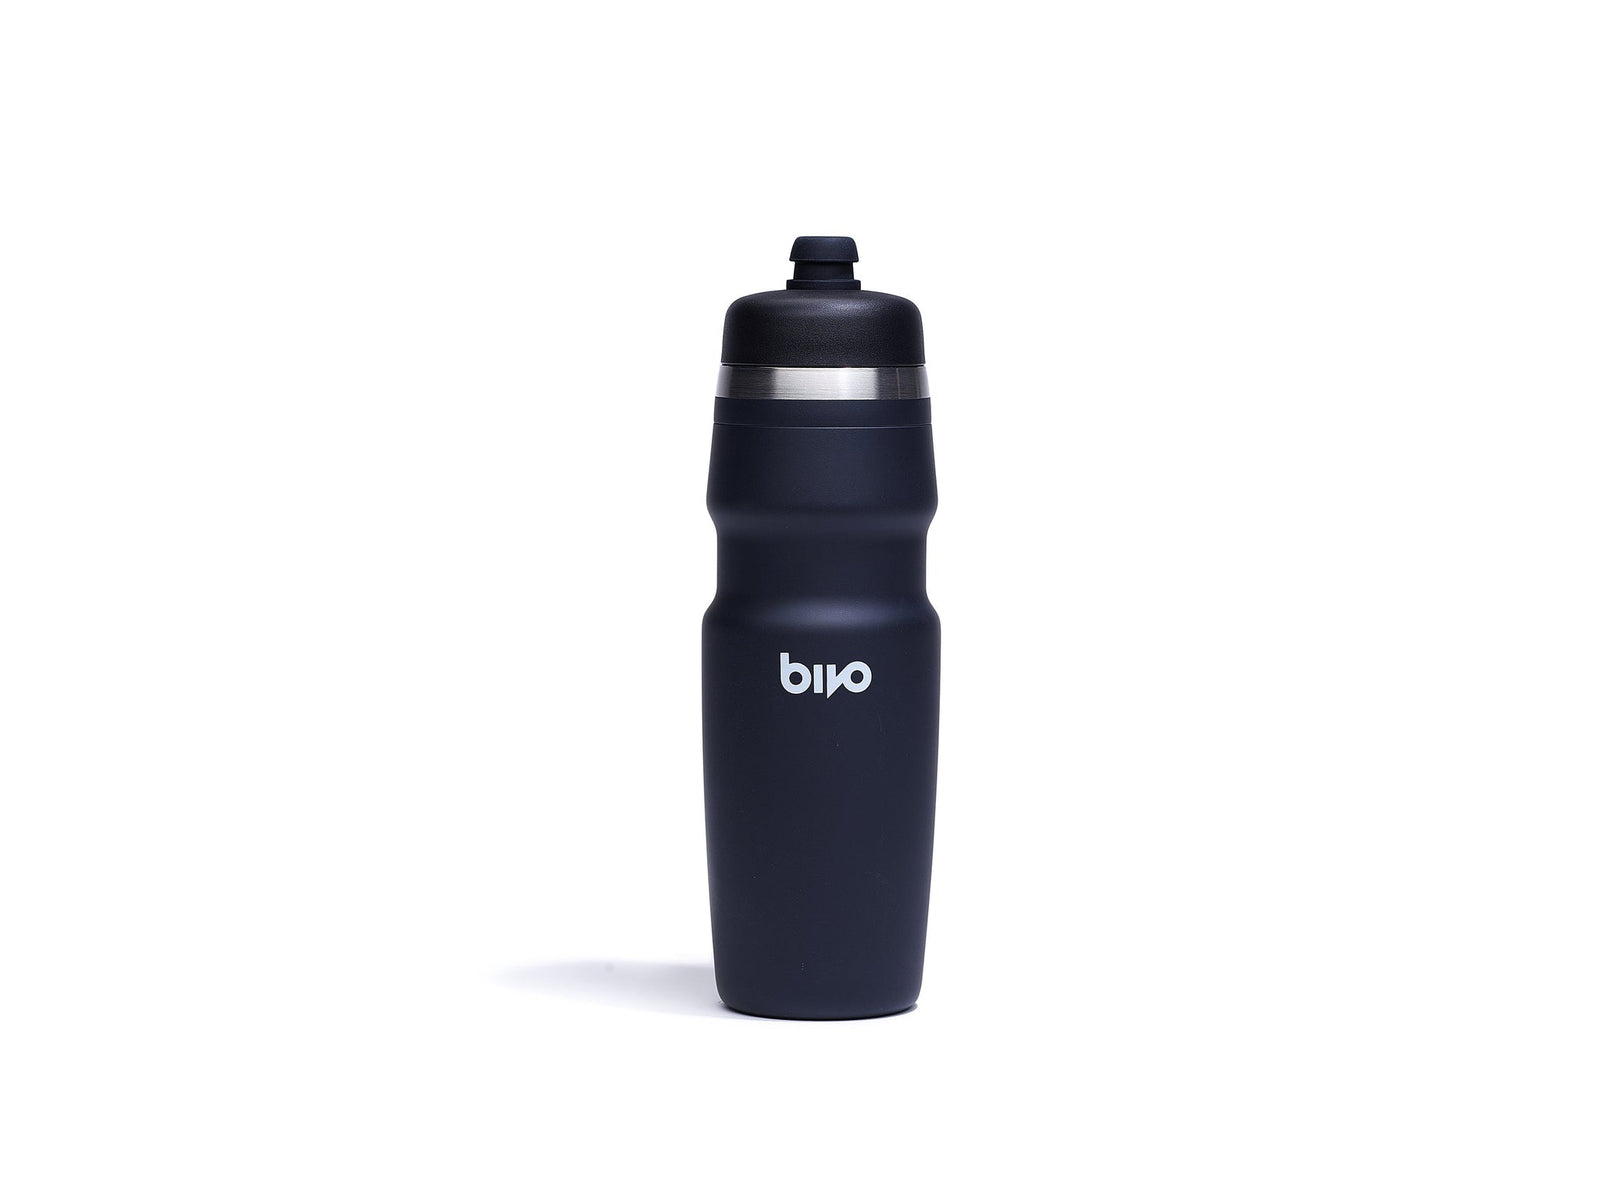 Bivo Duo Water Bottle ACCESSORIES - WATER BOTTLES & CAGES - WATER BOTTLES Bivo Black 